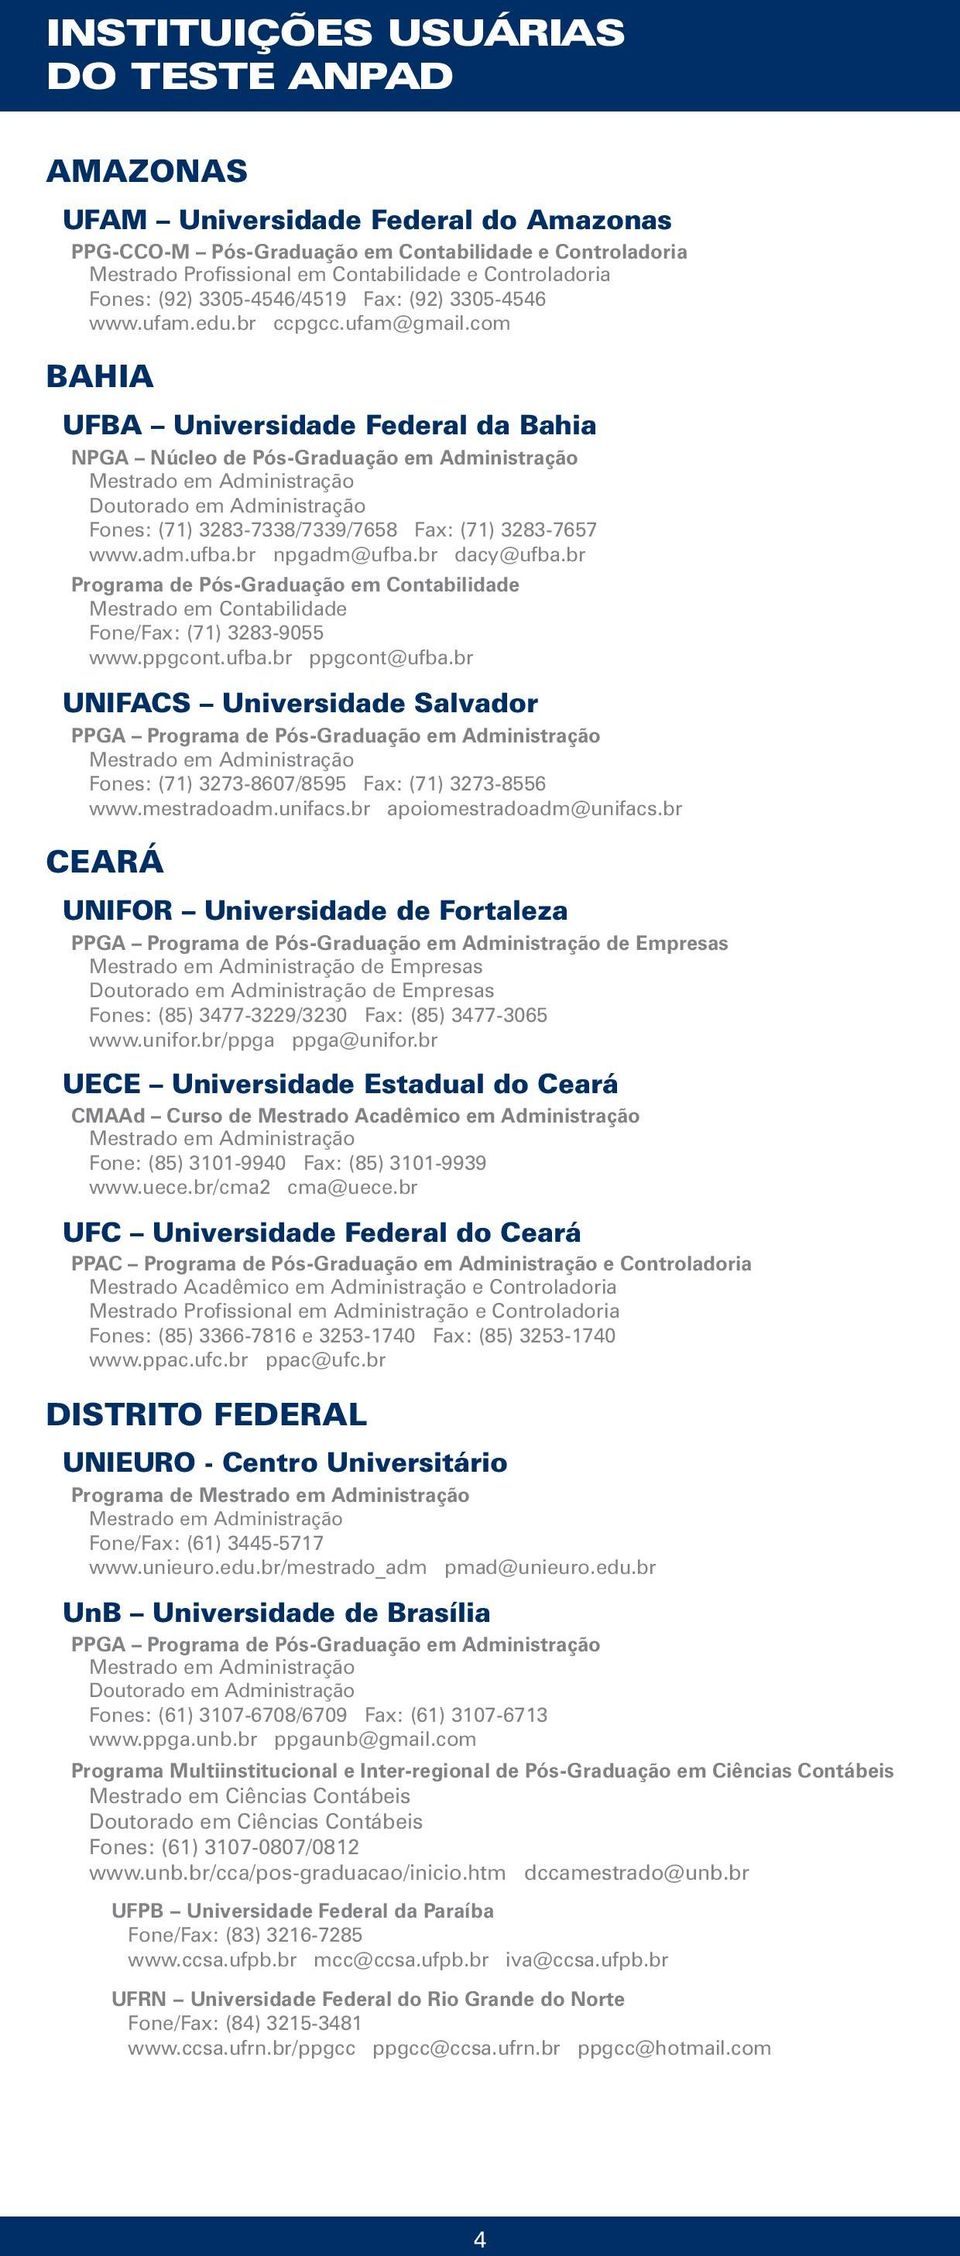 br npgadm@ufba.br dacy@ufba.br Programa de Pós-Graduação em Contabilidade Mestrado em Contabilidade Fone/Fax: (71) 3283-9055 www.ppgcont.ufba.br ppgcont@ufba.